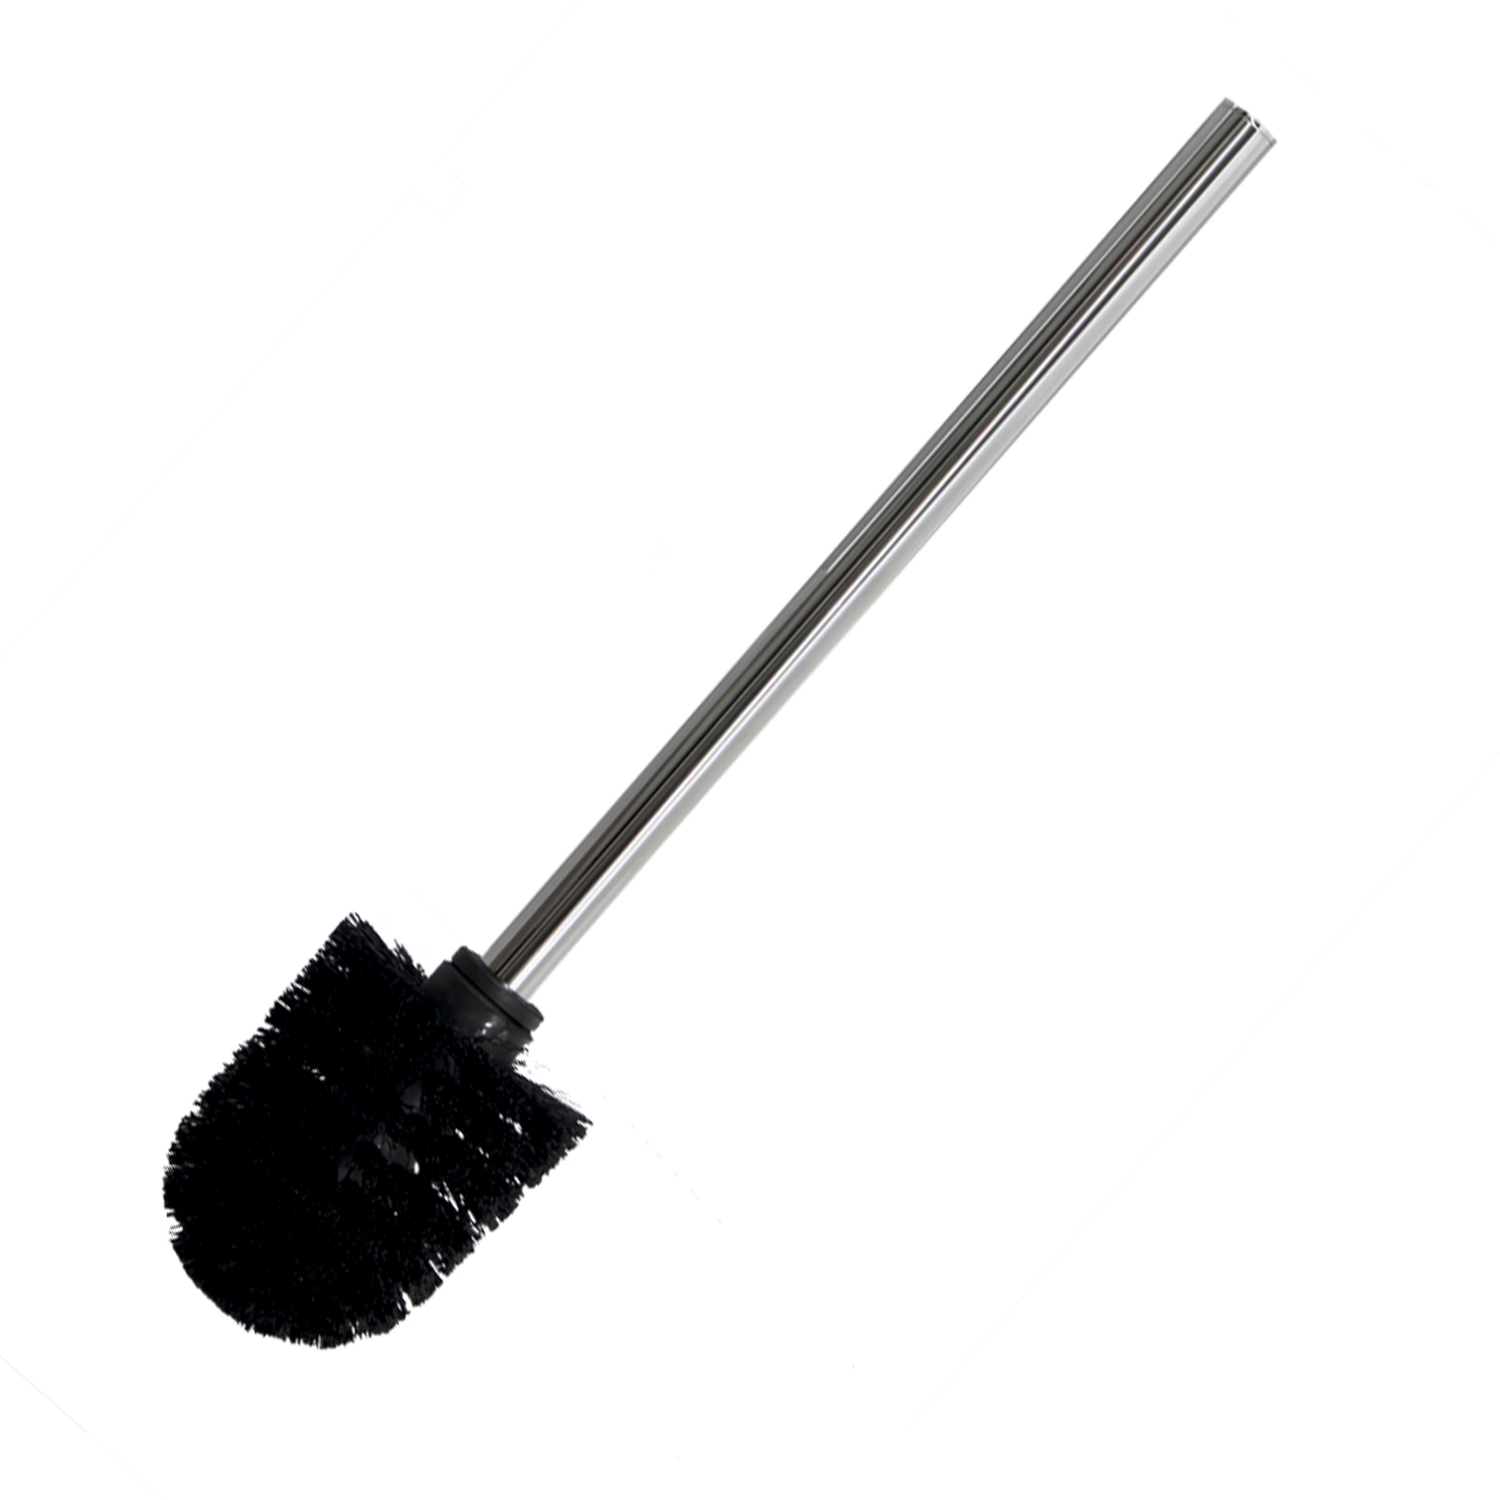 Щетка для унитаза WasserKRAFT K-026 9061711 черная щетка для унитаза с держателем настенные пластиковые щетки для унитаза набор инструментов для чистки ванной комнаты аксессуары дл